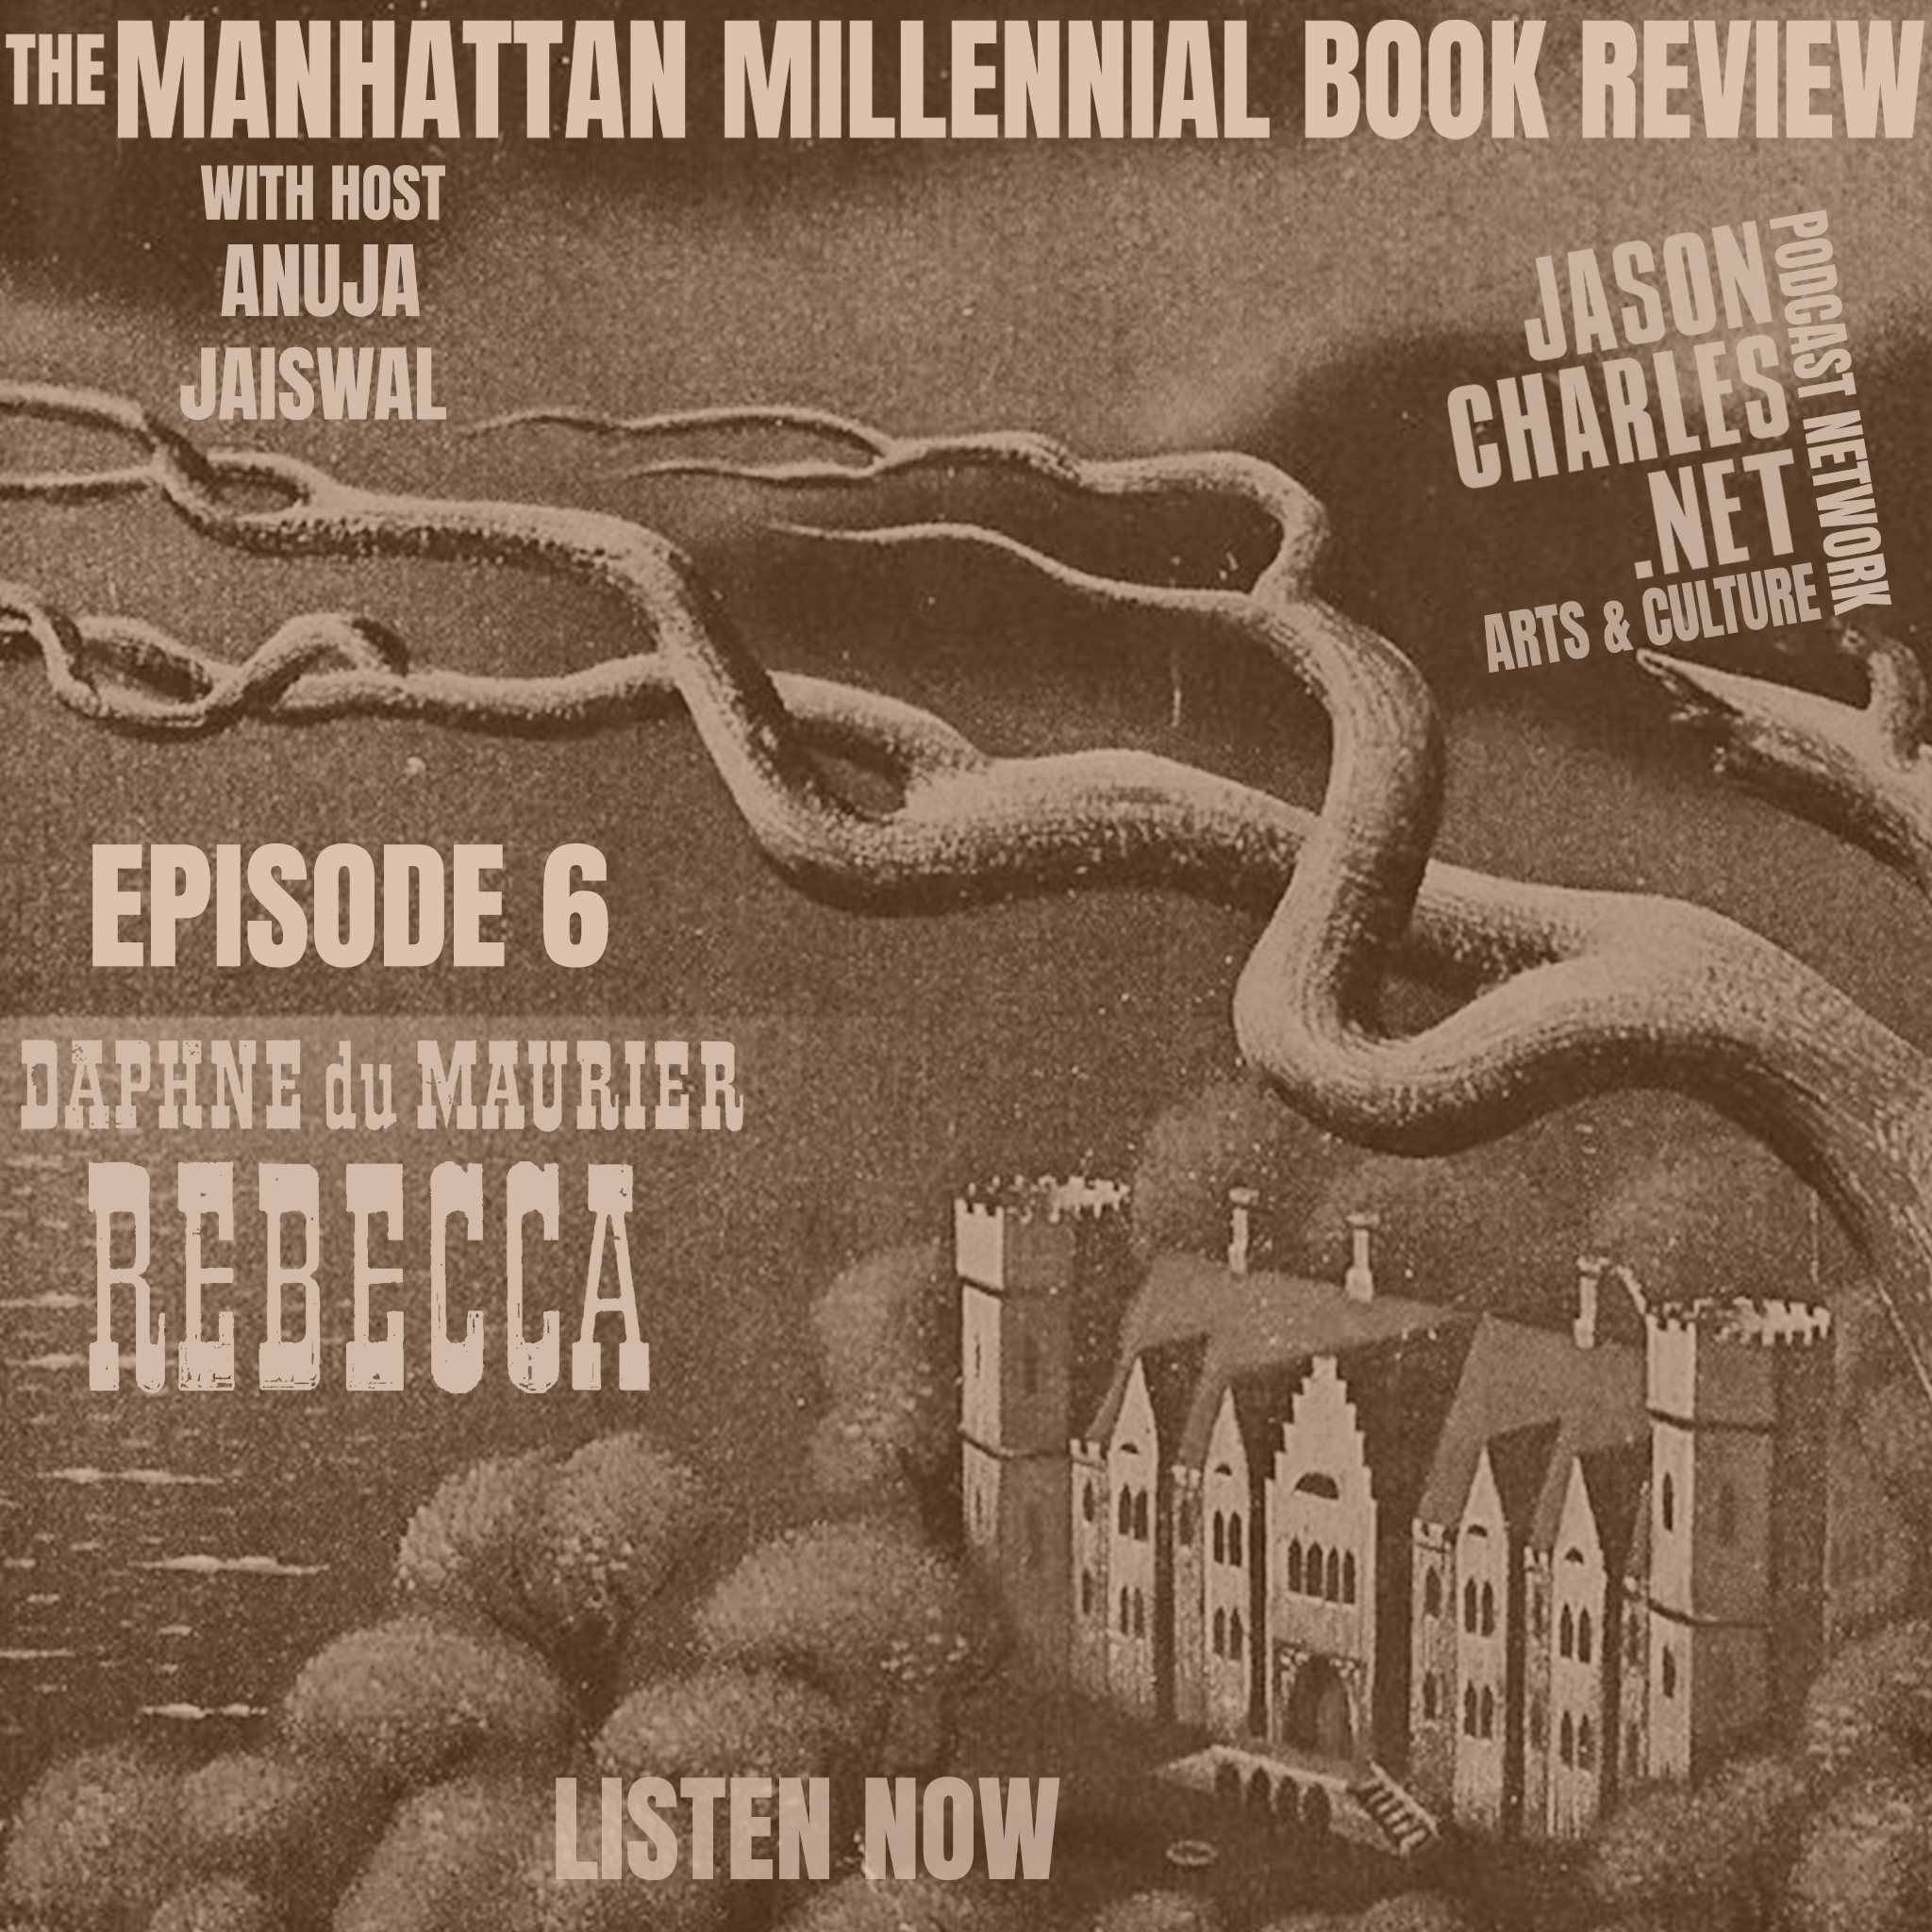 THE MANHATTAN MILLENNIAL BOOK REVIEW Episode 6 Daphne DuMaurier's "REBECCA"